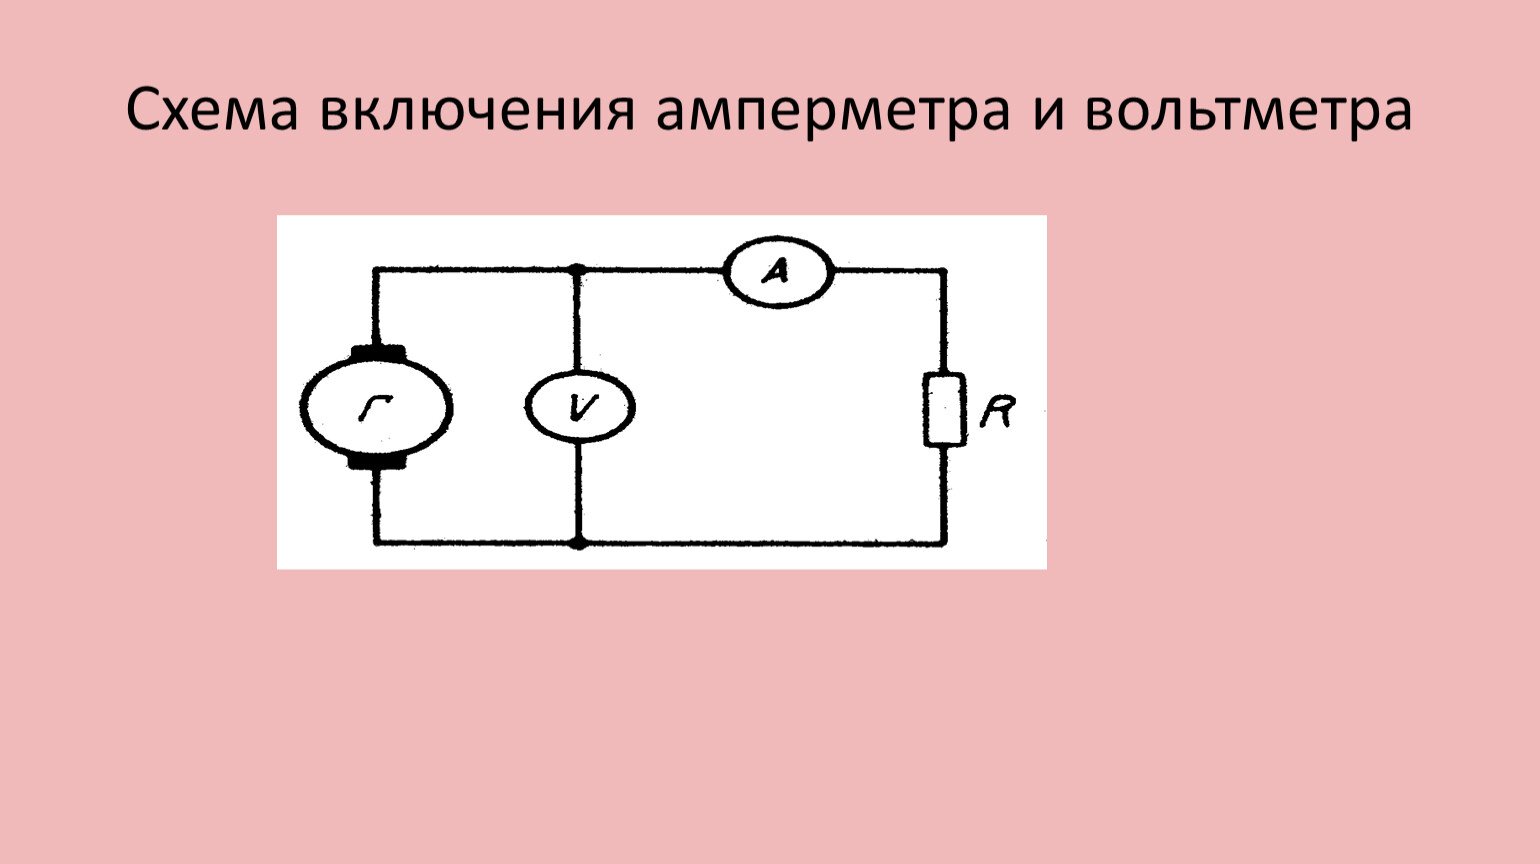 Схема включения амперметра. Параллельное включение амперметра. Включатель амперметра с 2 лампами в чертеже. Прибор измерительный физика схема. Как включают амперметр